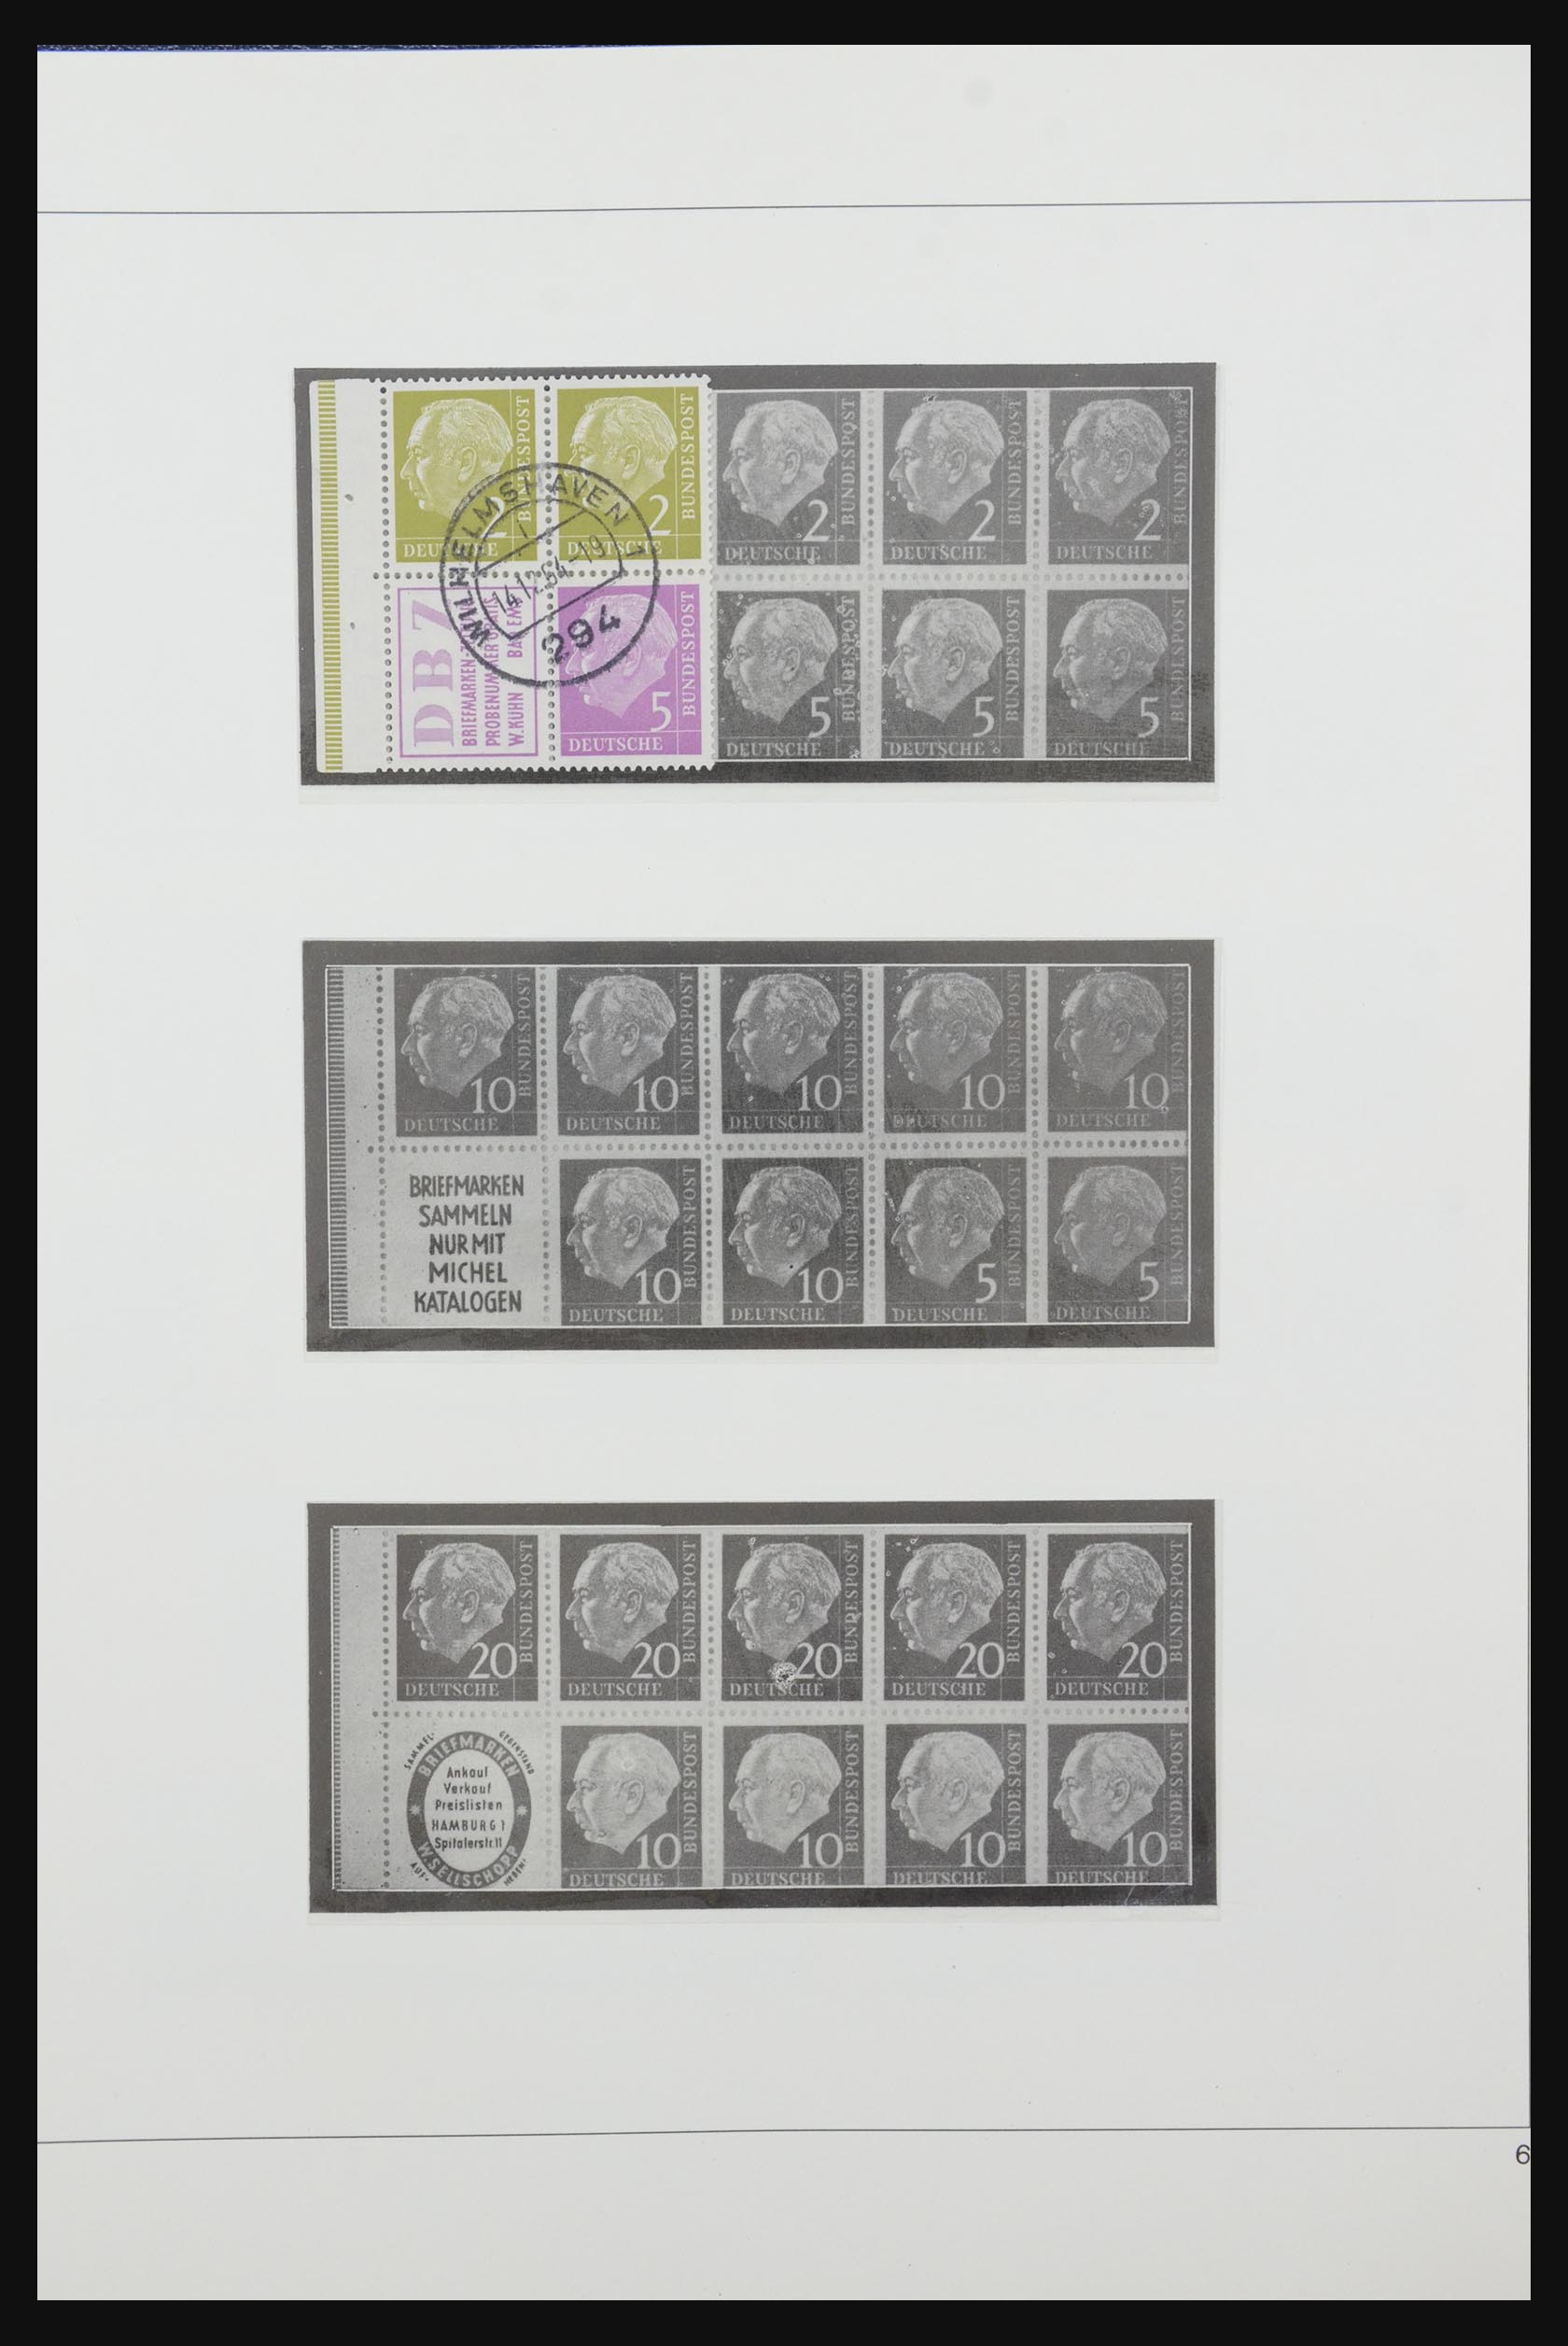 31842 007 - 31842 Bundespost combinations 1951-2003.